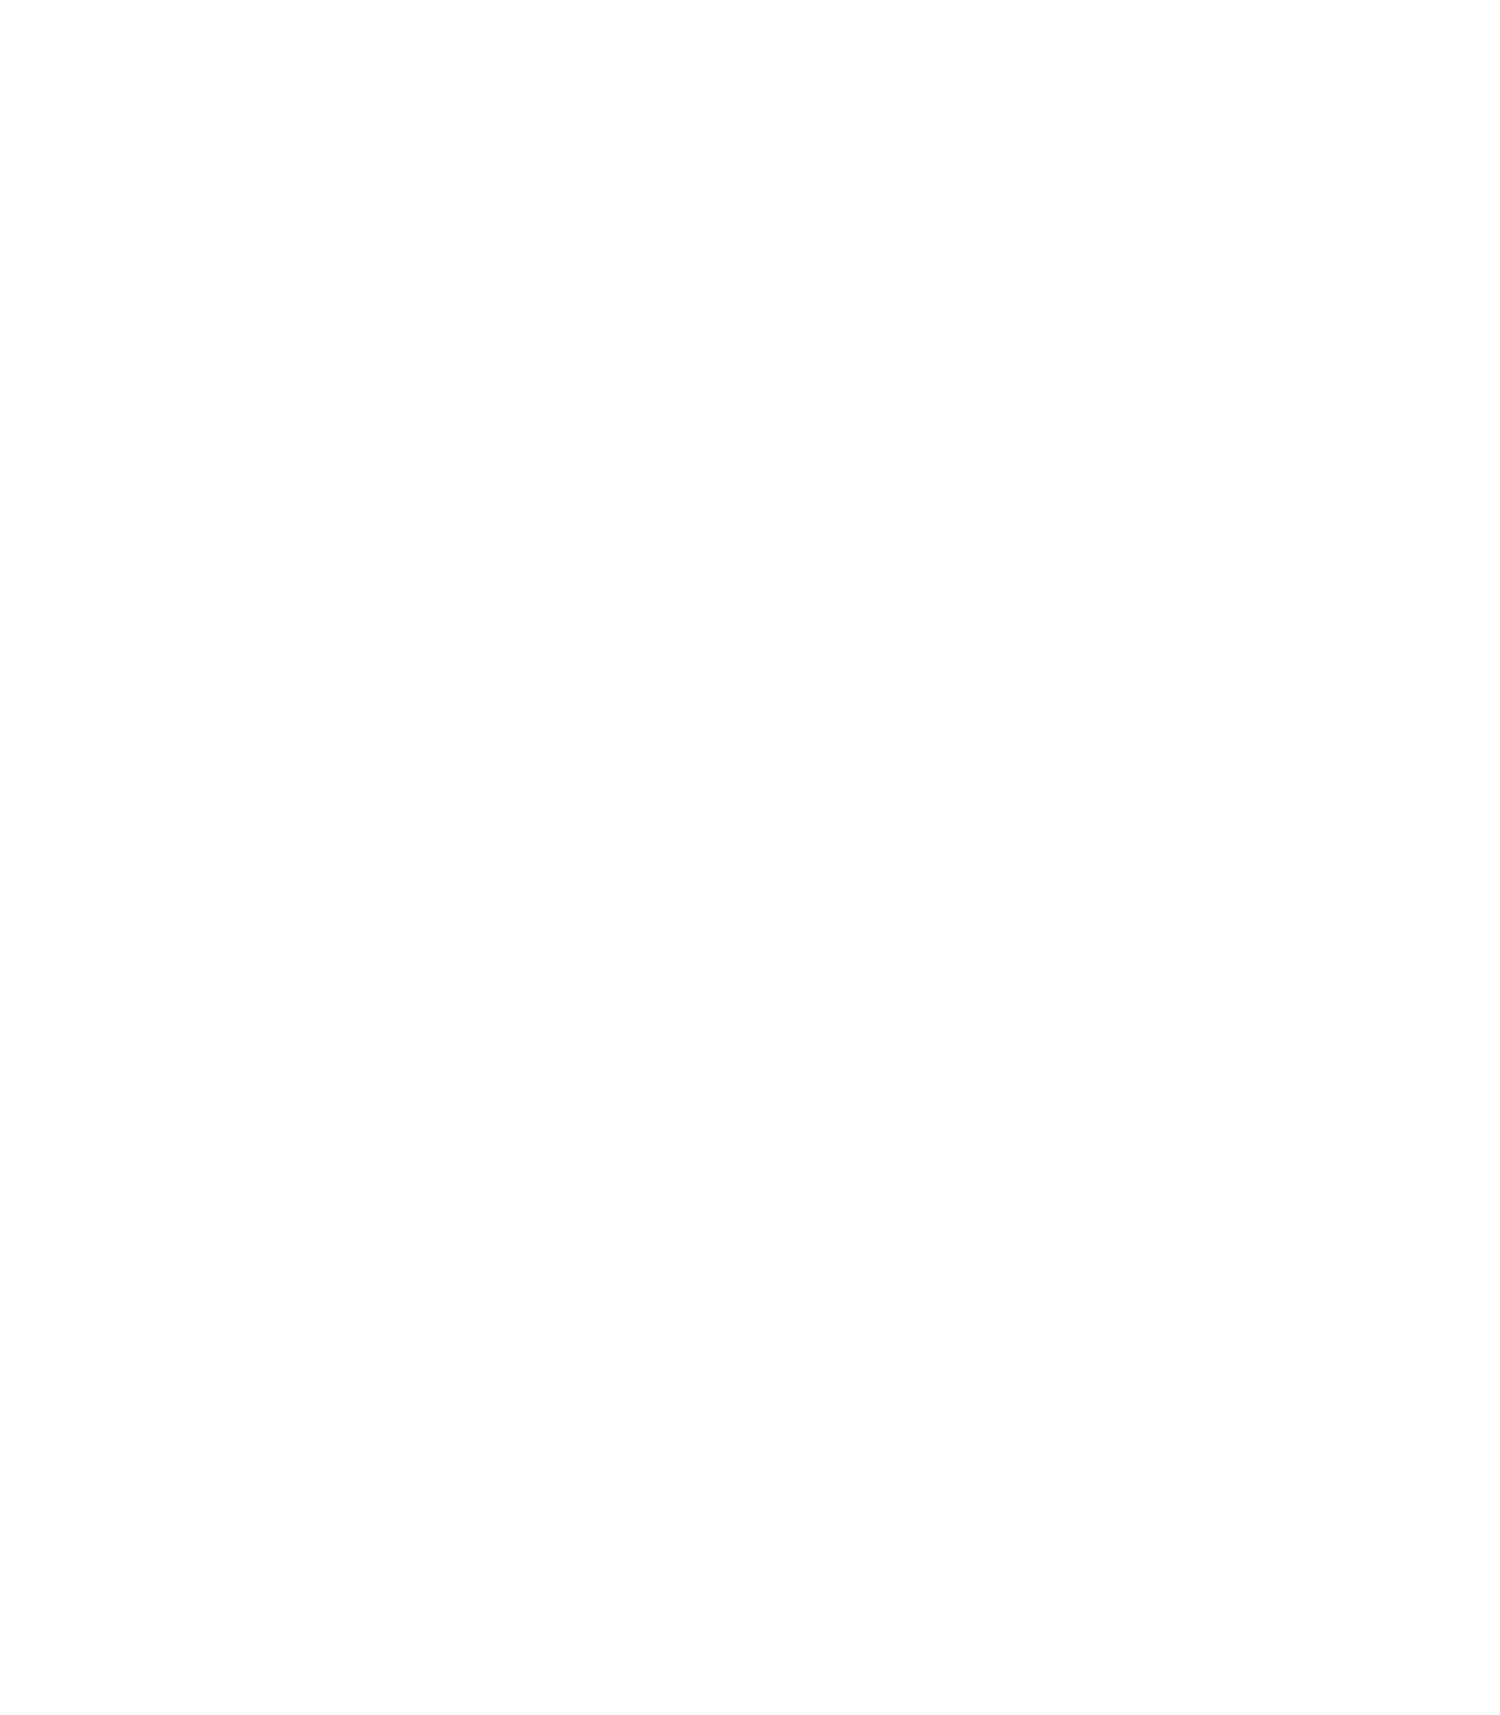 FoxFace Studios